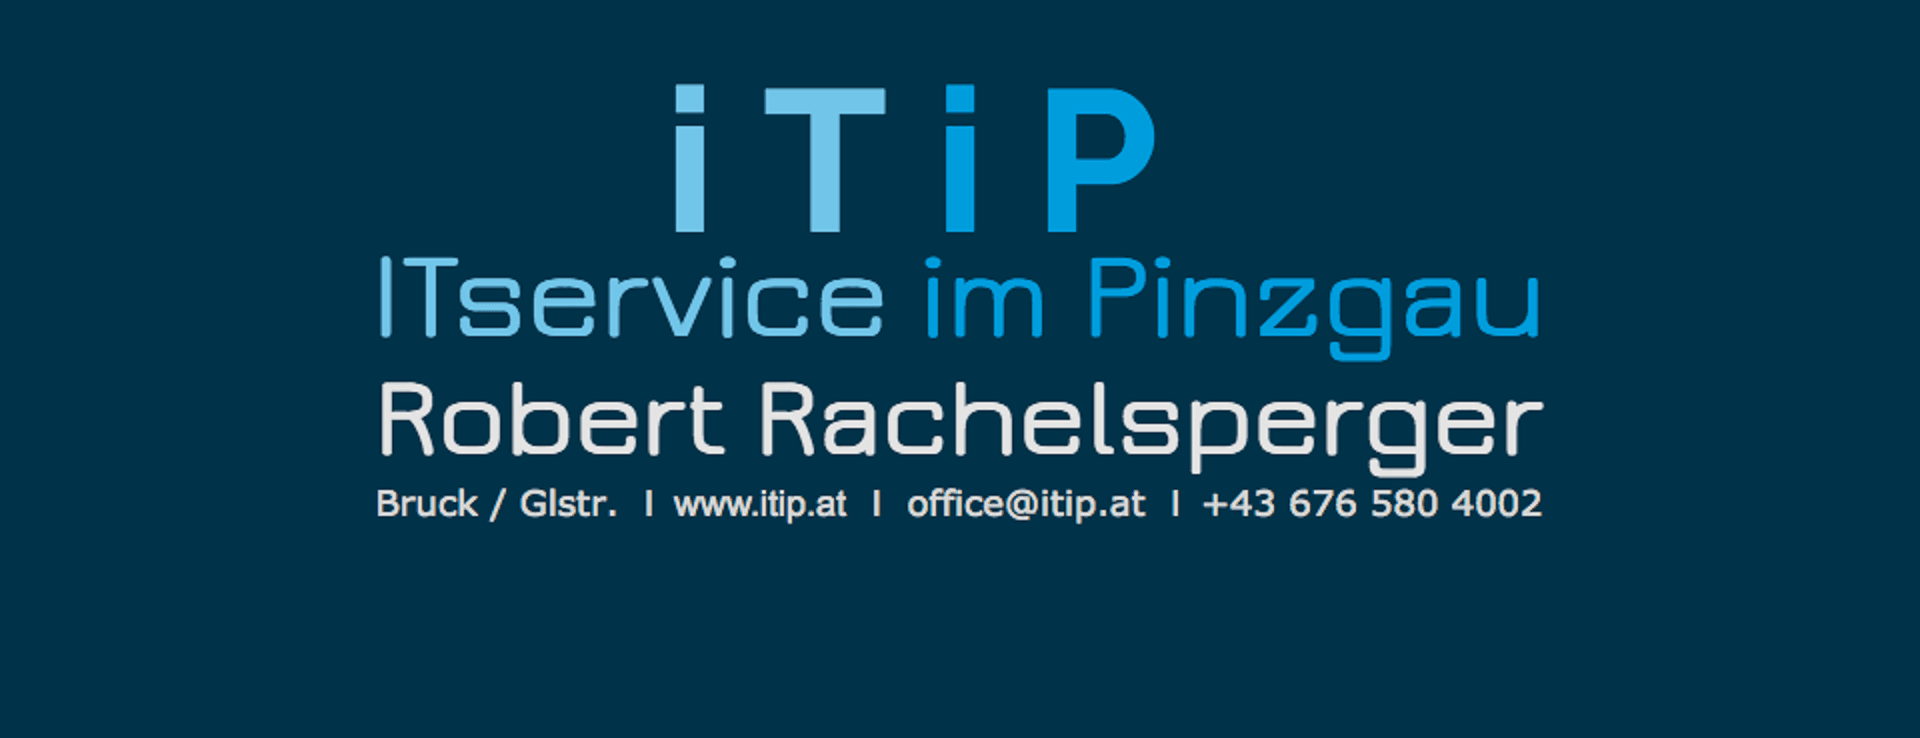 Vorschau - Foto 1 von iTiP - ITservice im Pinzgau - Robert Rachelsperger